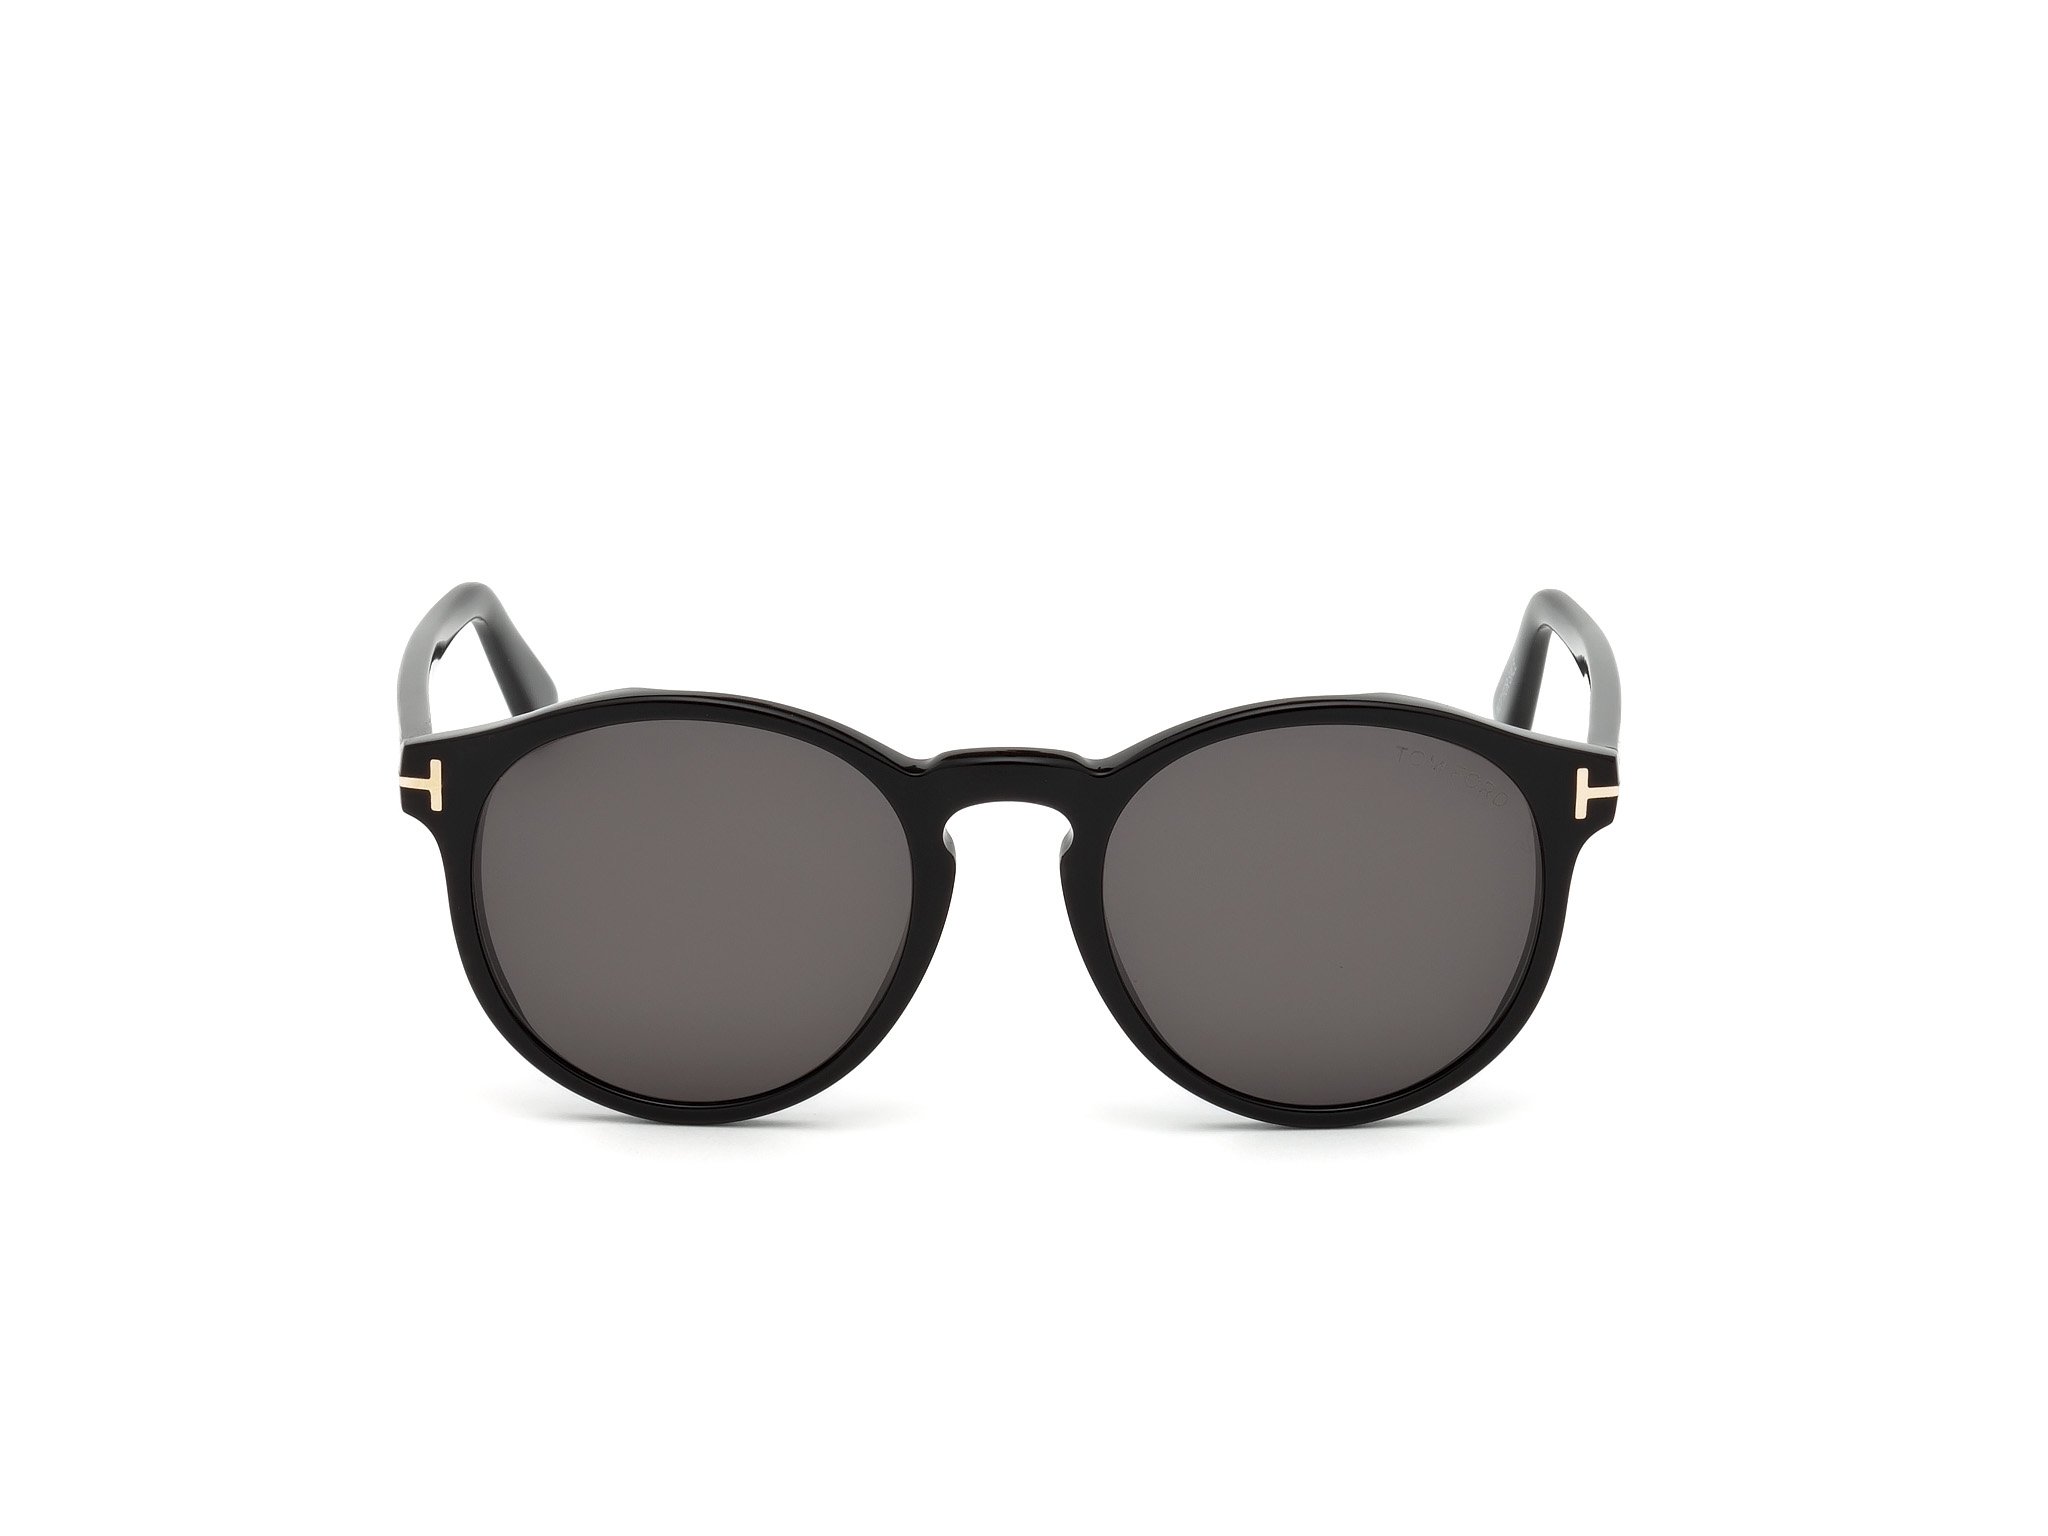 Das Bild zeigt die Sonnenbrille IAN FT0591 von der Marke Tom Ford in schwarz frontal